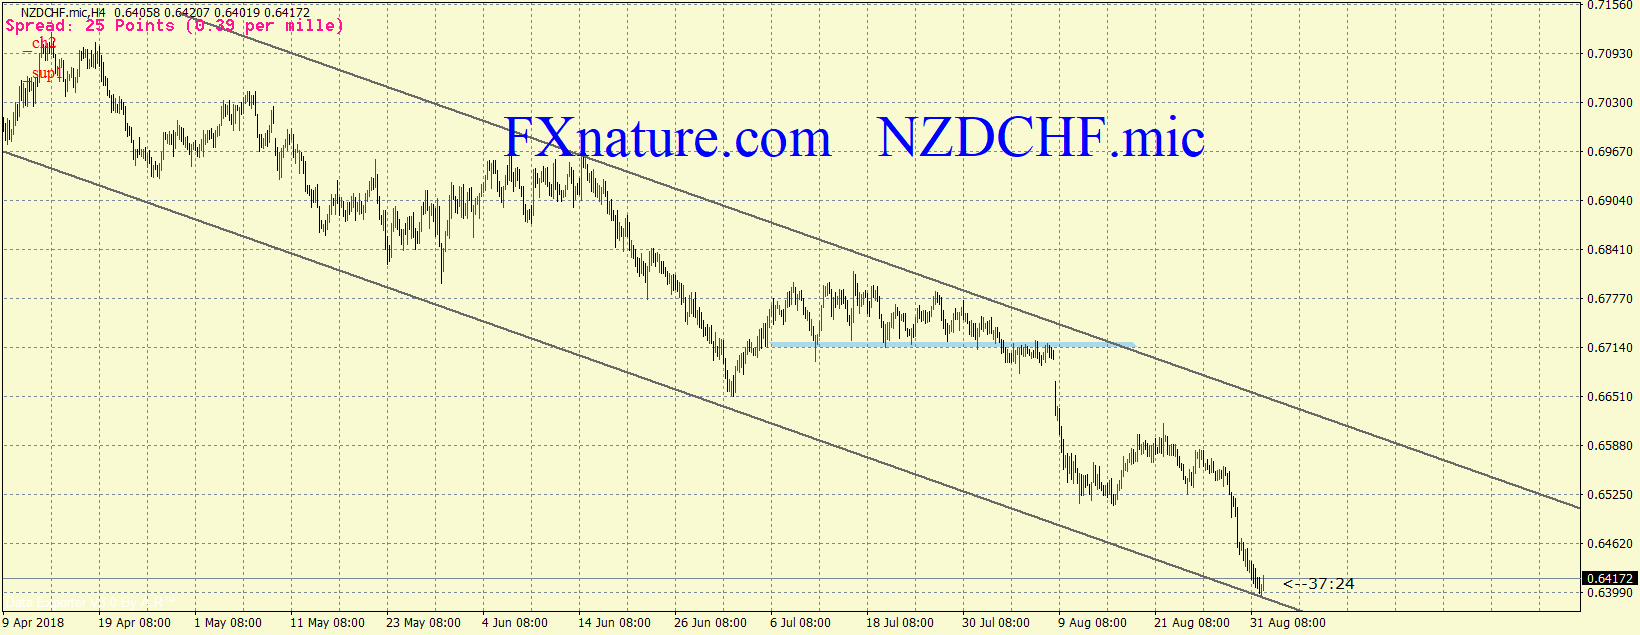 دلار نیوزلند فرانک سوئیس